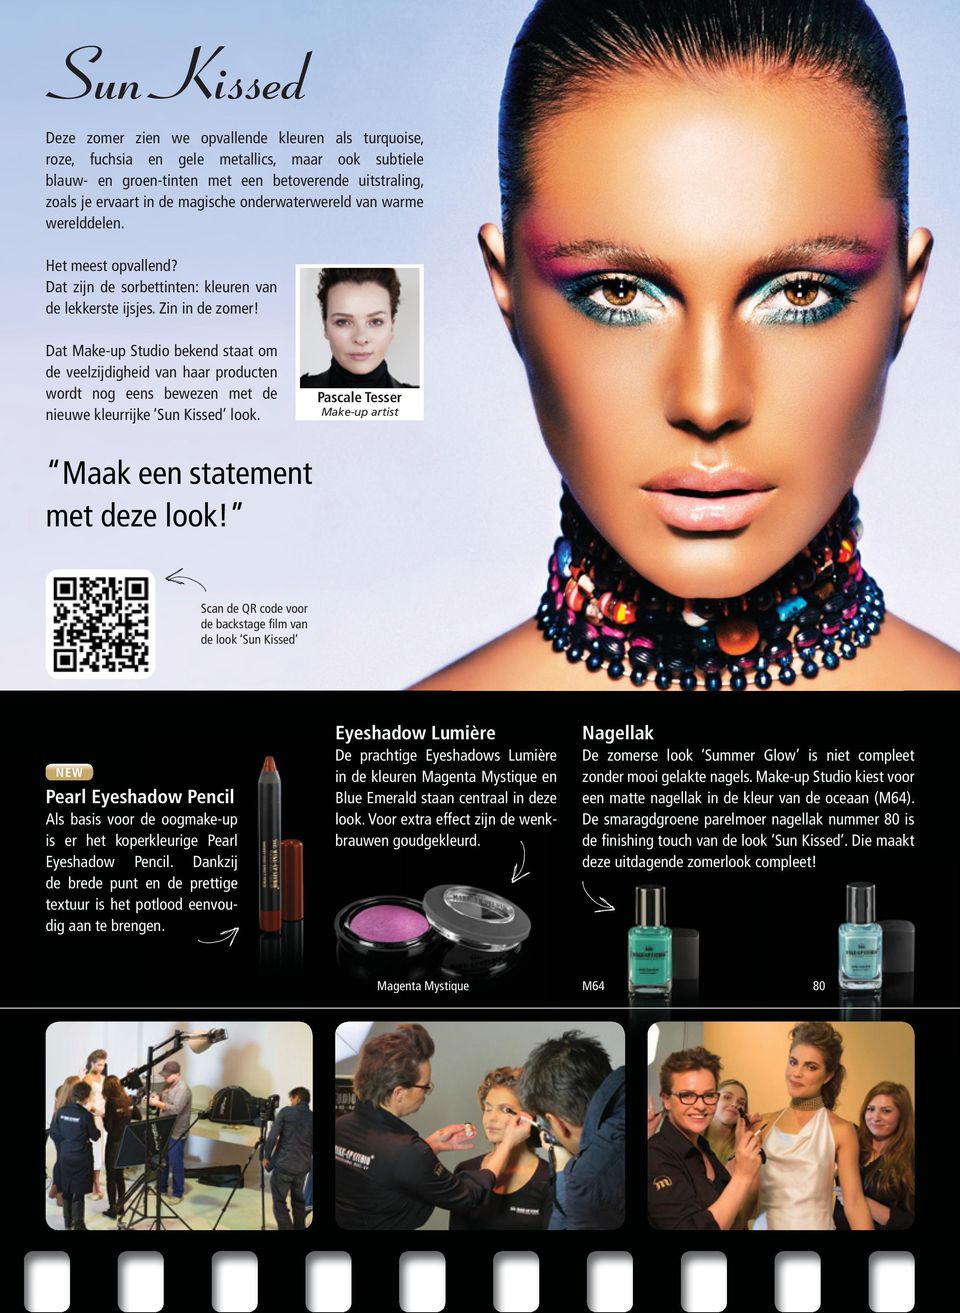 Dat Make-up Studio bekend staat om de veelzijdigheid van haar producten wordt nog eens bewezen met de nieuwe kleurrijke Sun Kissed look. Pascale Tesser Make-up artist Maak een statement met deze look!